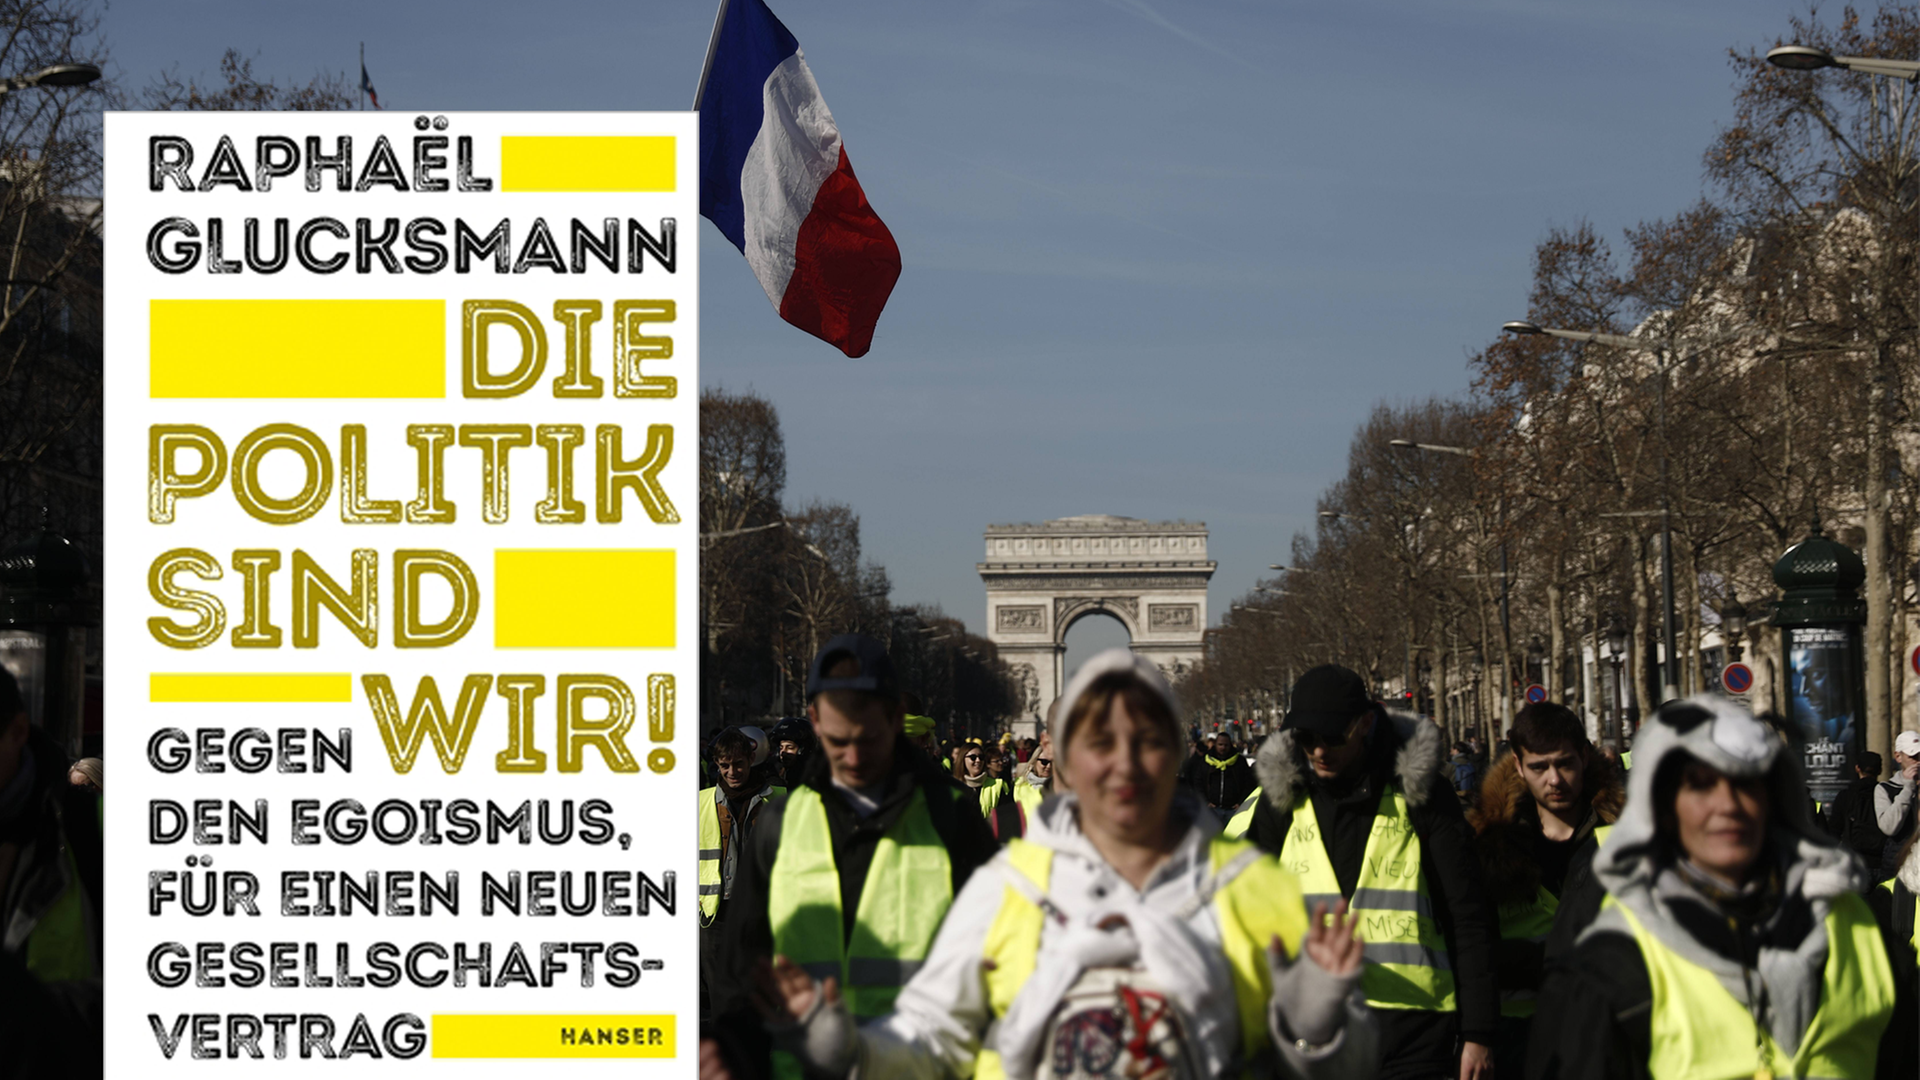 Im Vordergrund ist das Cover des Buches "Die Politik sind wir!" von Raphaël Glucksmann, im Hintergrund ist ein Protest der Gelbwesten in Paris zu sehen, wo sich die Demonstranten vorm Arc de Triomphe weg bewegen.